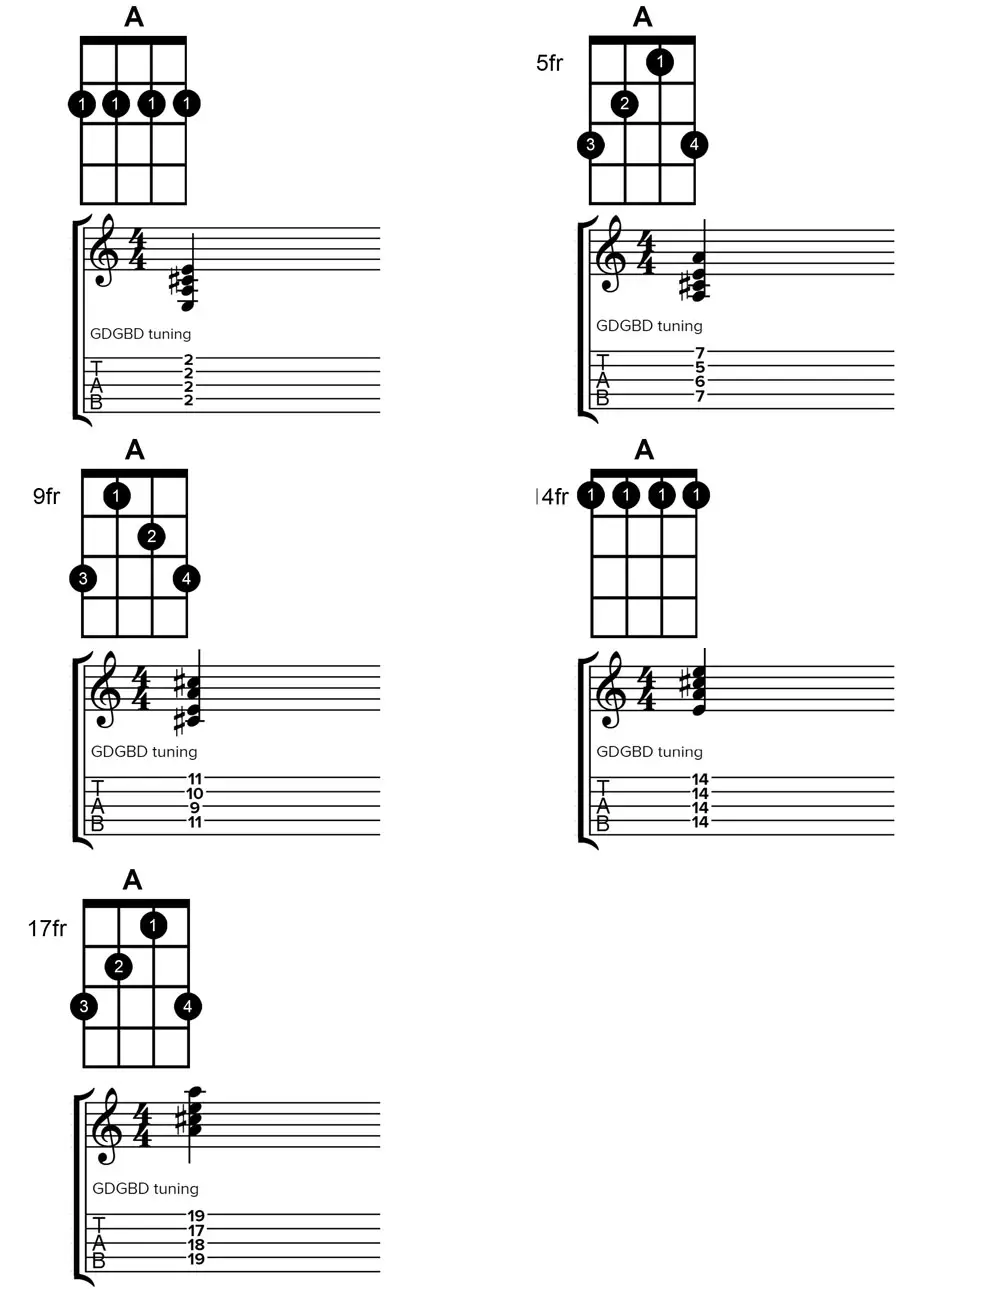 banjo A major chord chart